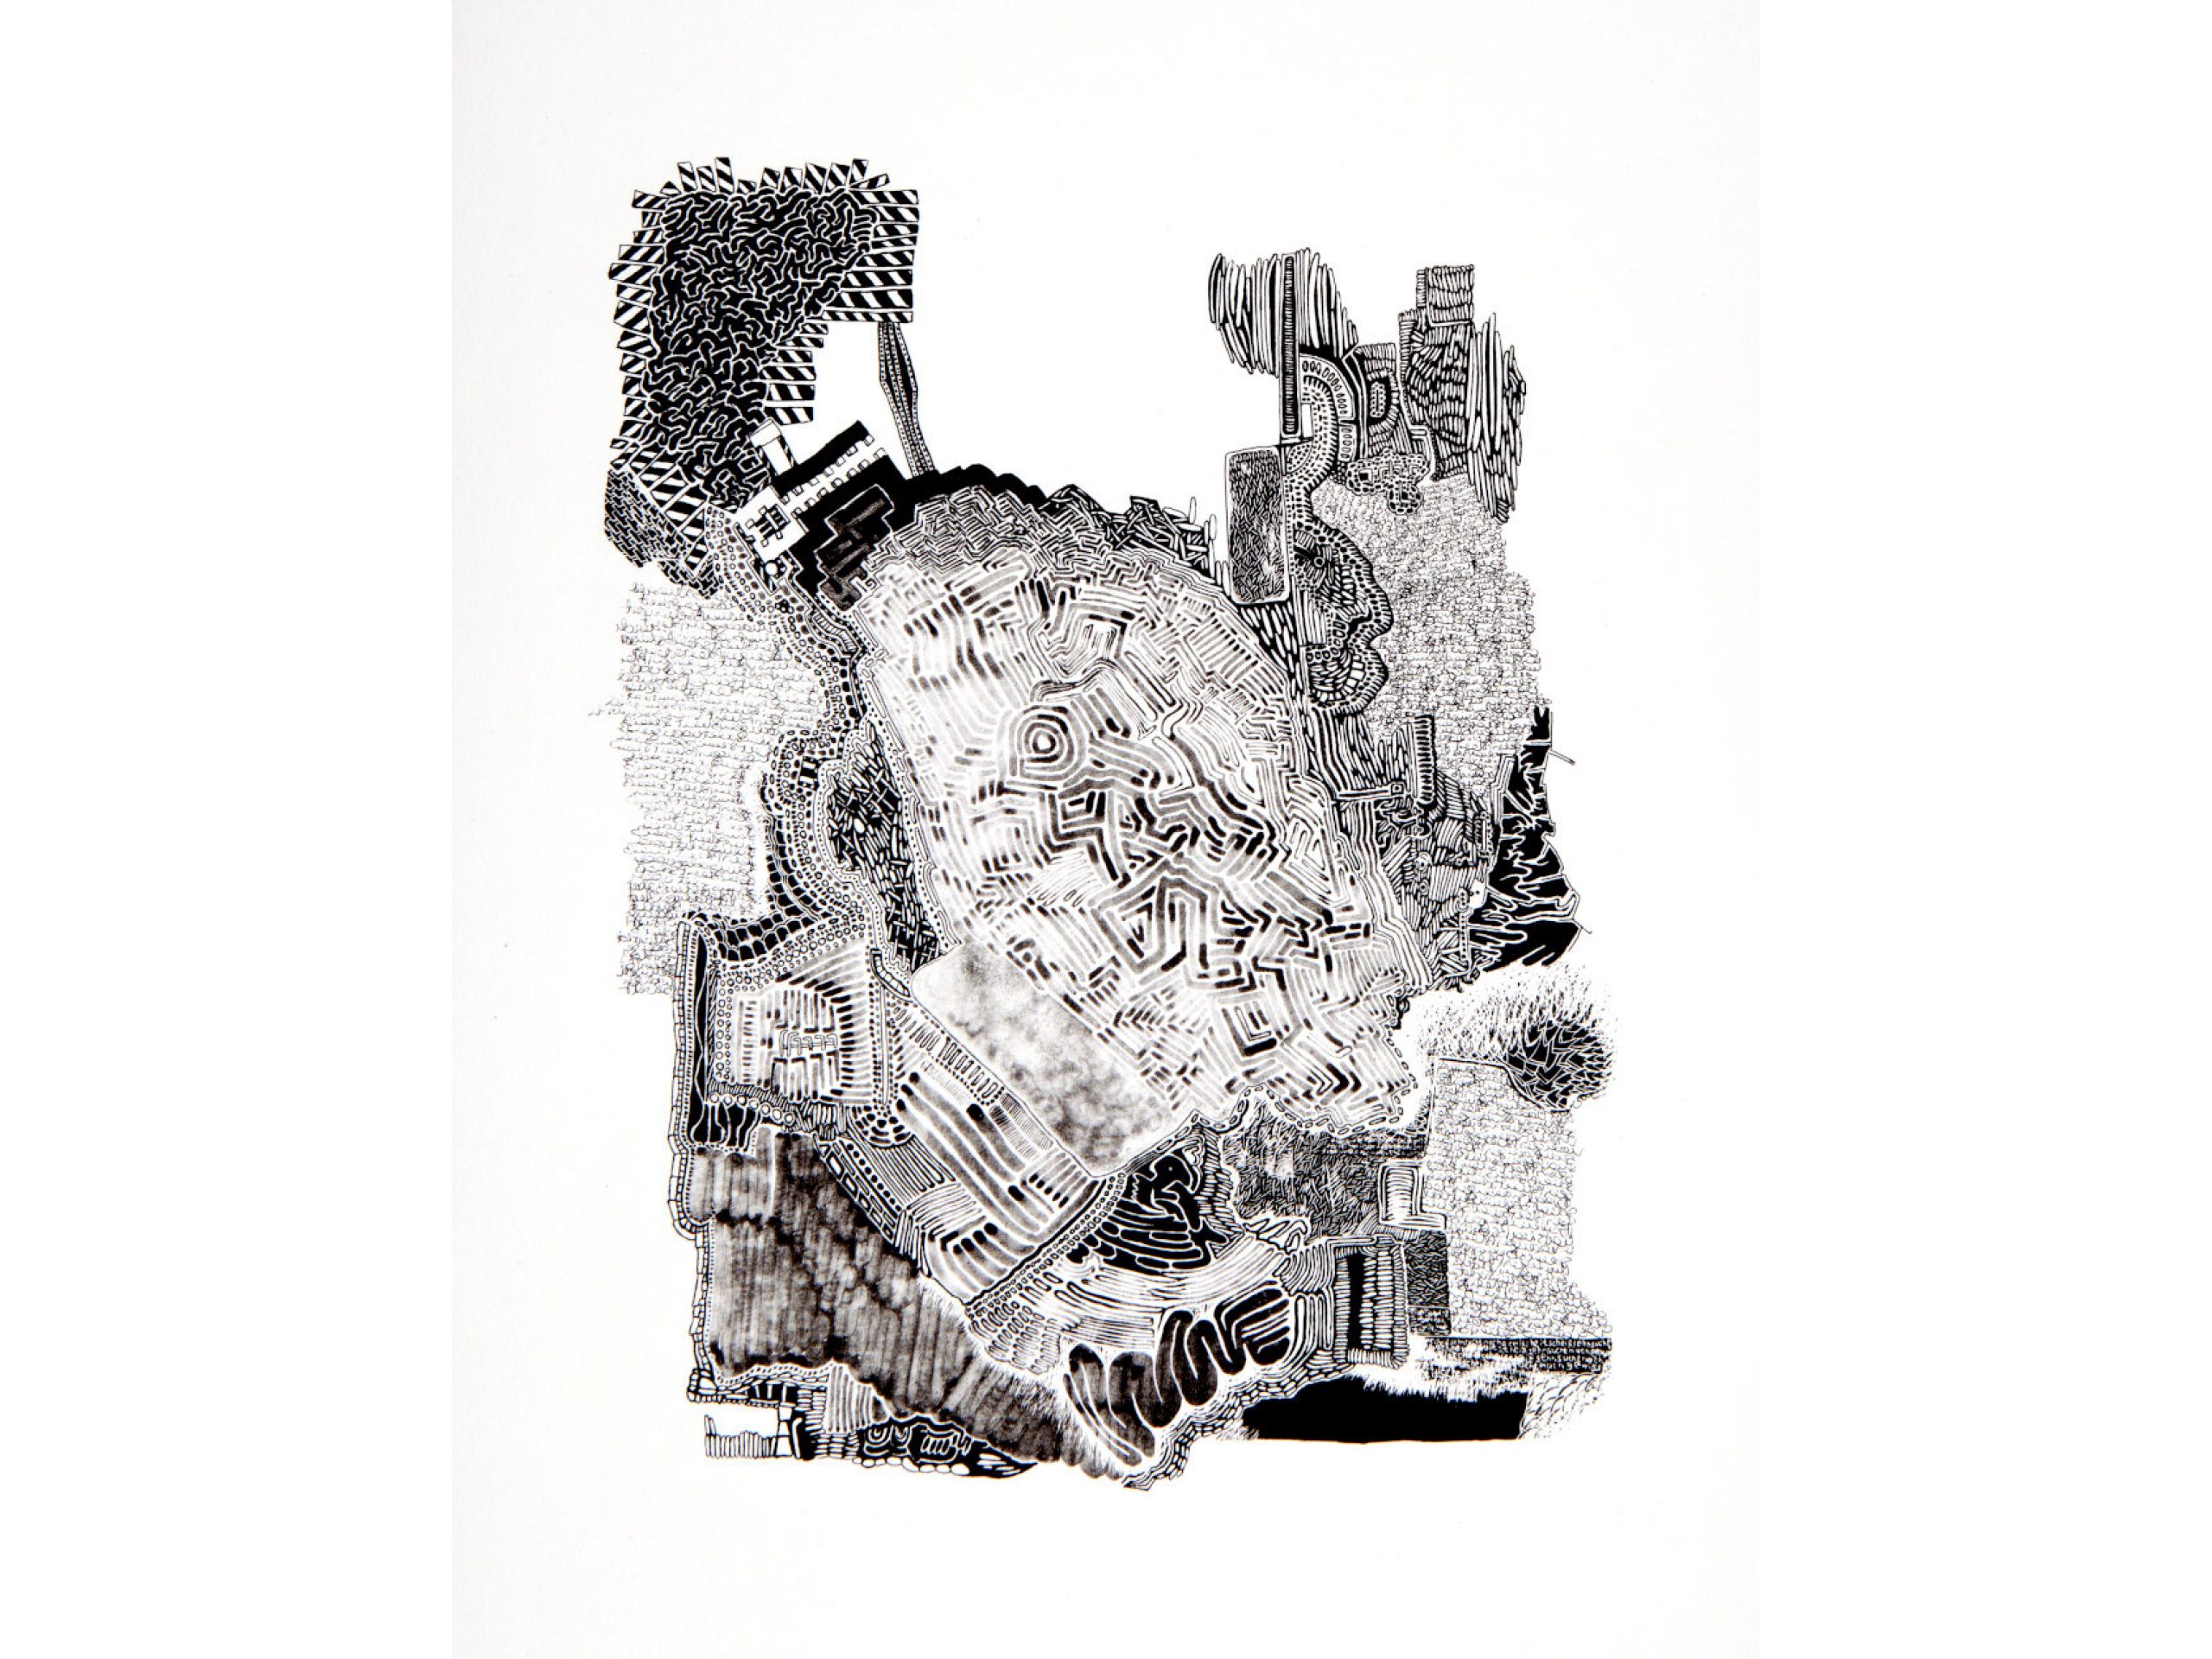 Carmen Weber, 'Immer schön außen herum', 2019, Lithografie auf Papier, 33 x 26 cm, 80 € 